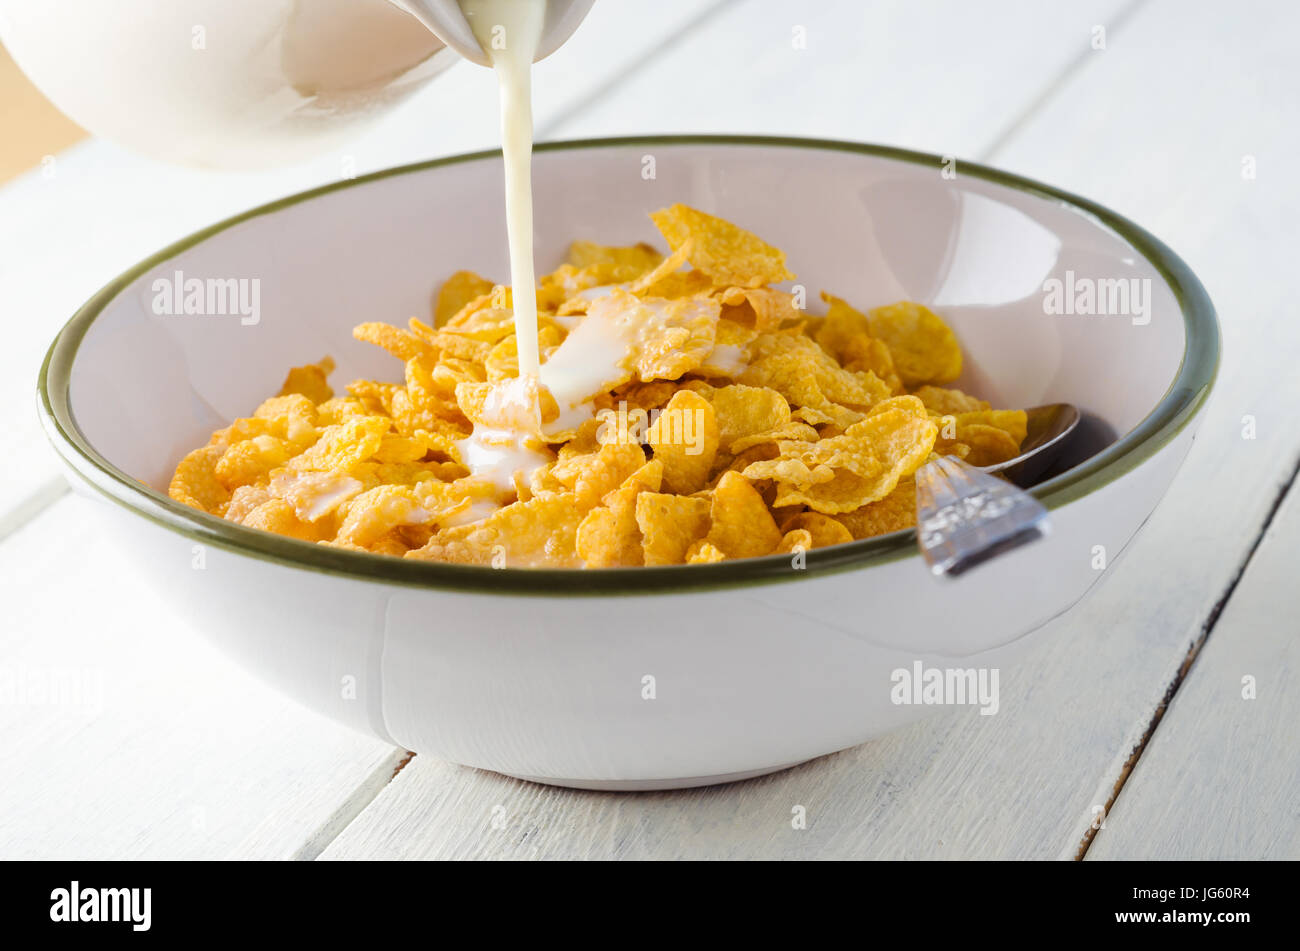 Milch gießen aus einem Krug in eine Schüssel mit Frühstück Cornflakes, auf einem weiß lackierten Holz beplankt Küchentisch. Stockfoto